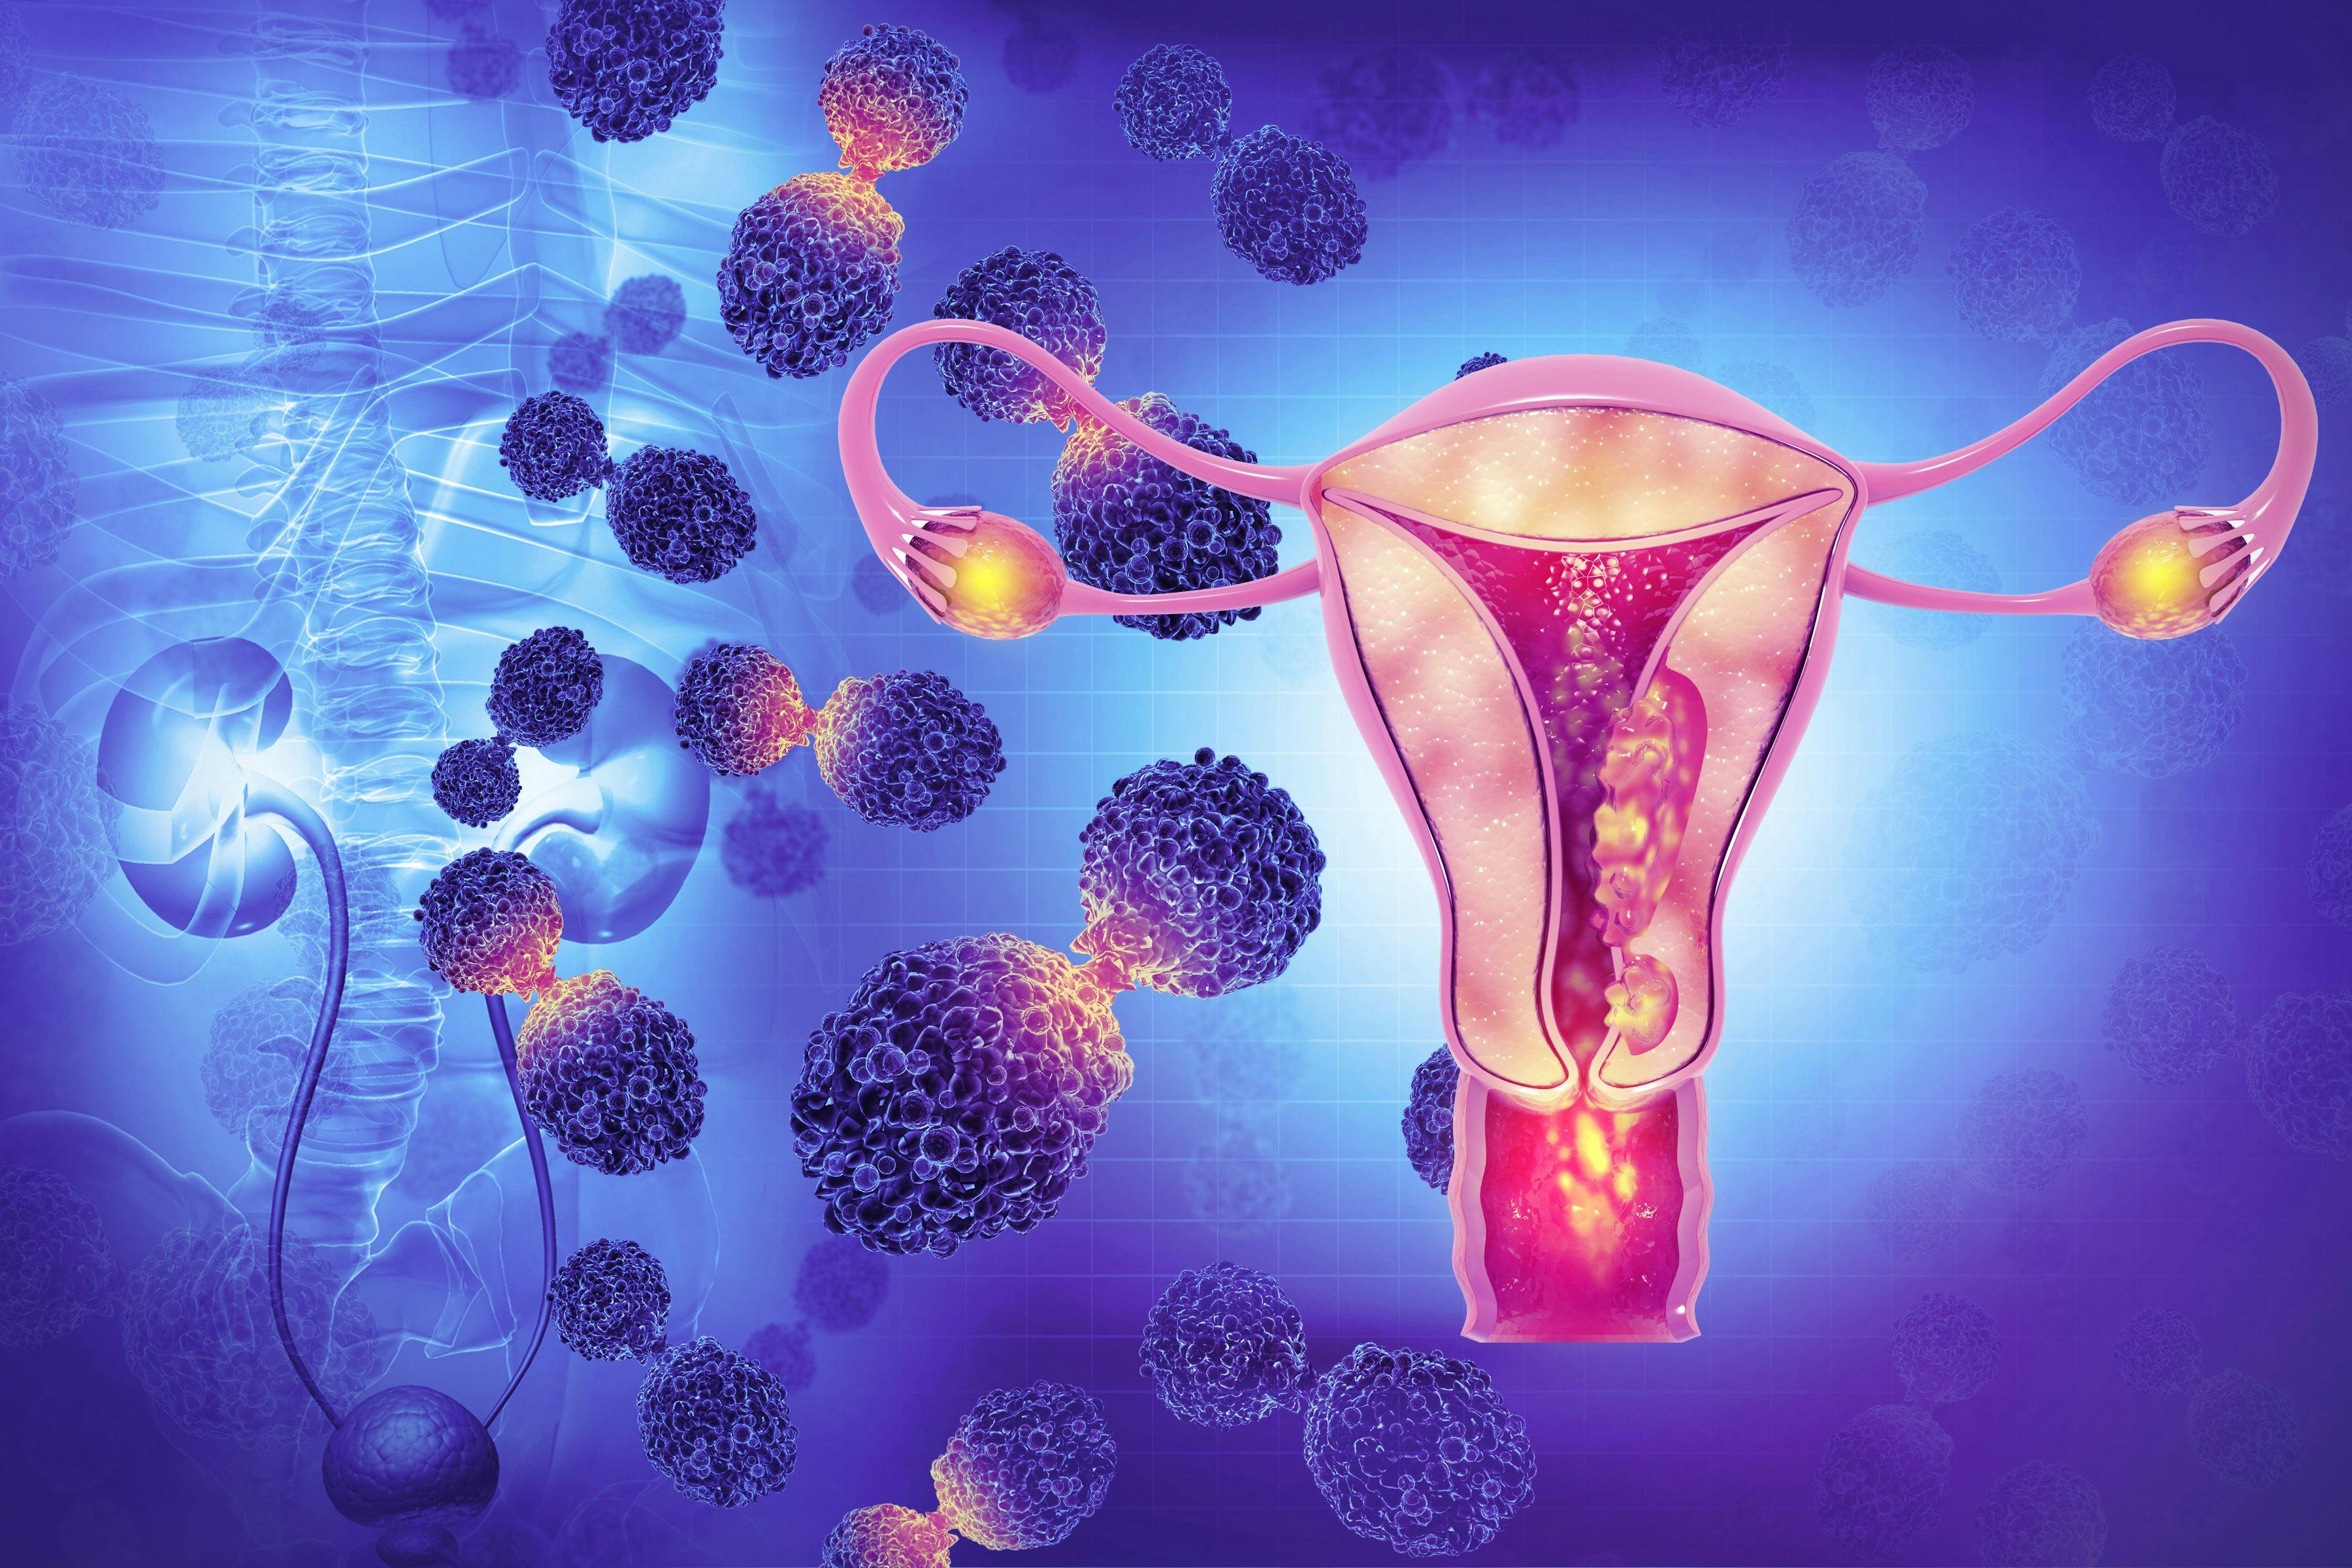 Ovarian cancer illustration | Image credit: Crystal light - stock.adobe.com